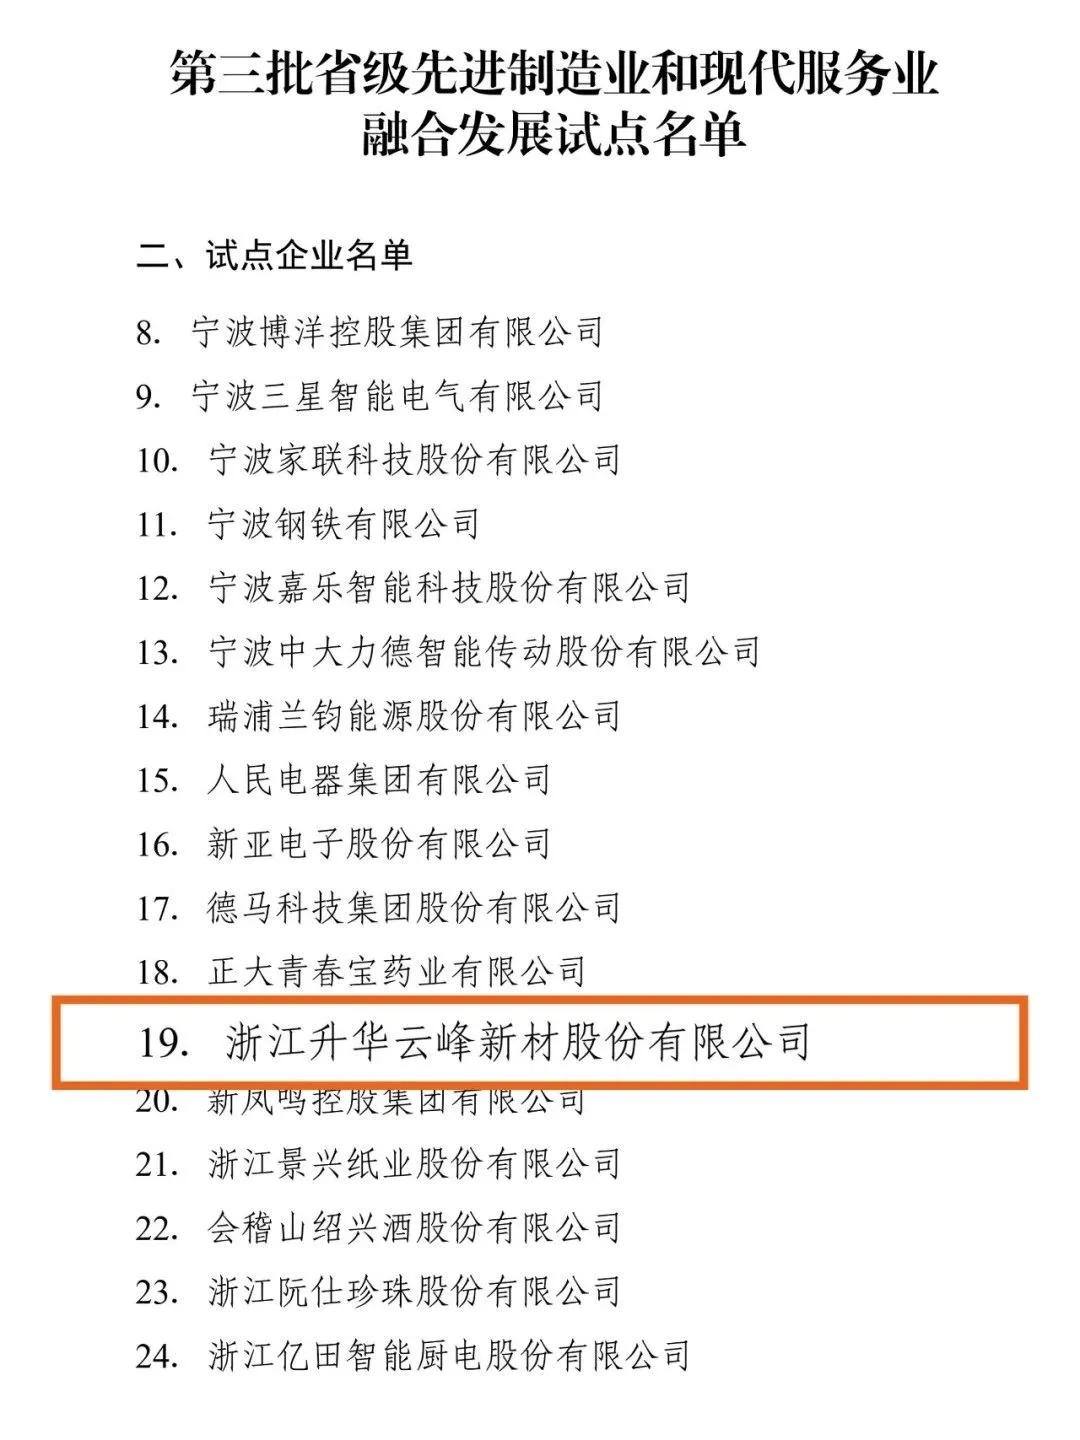 近日，浙江省发展改革委公布了《第三批省级先进制造业和现代服务业融合发展试点名单》